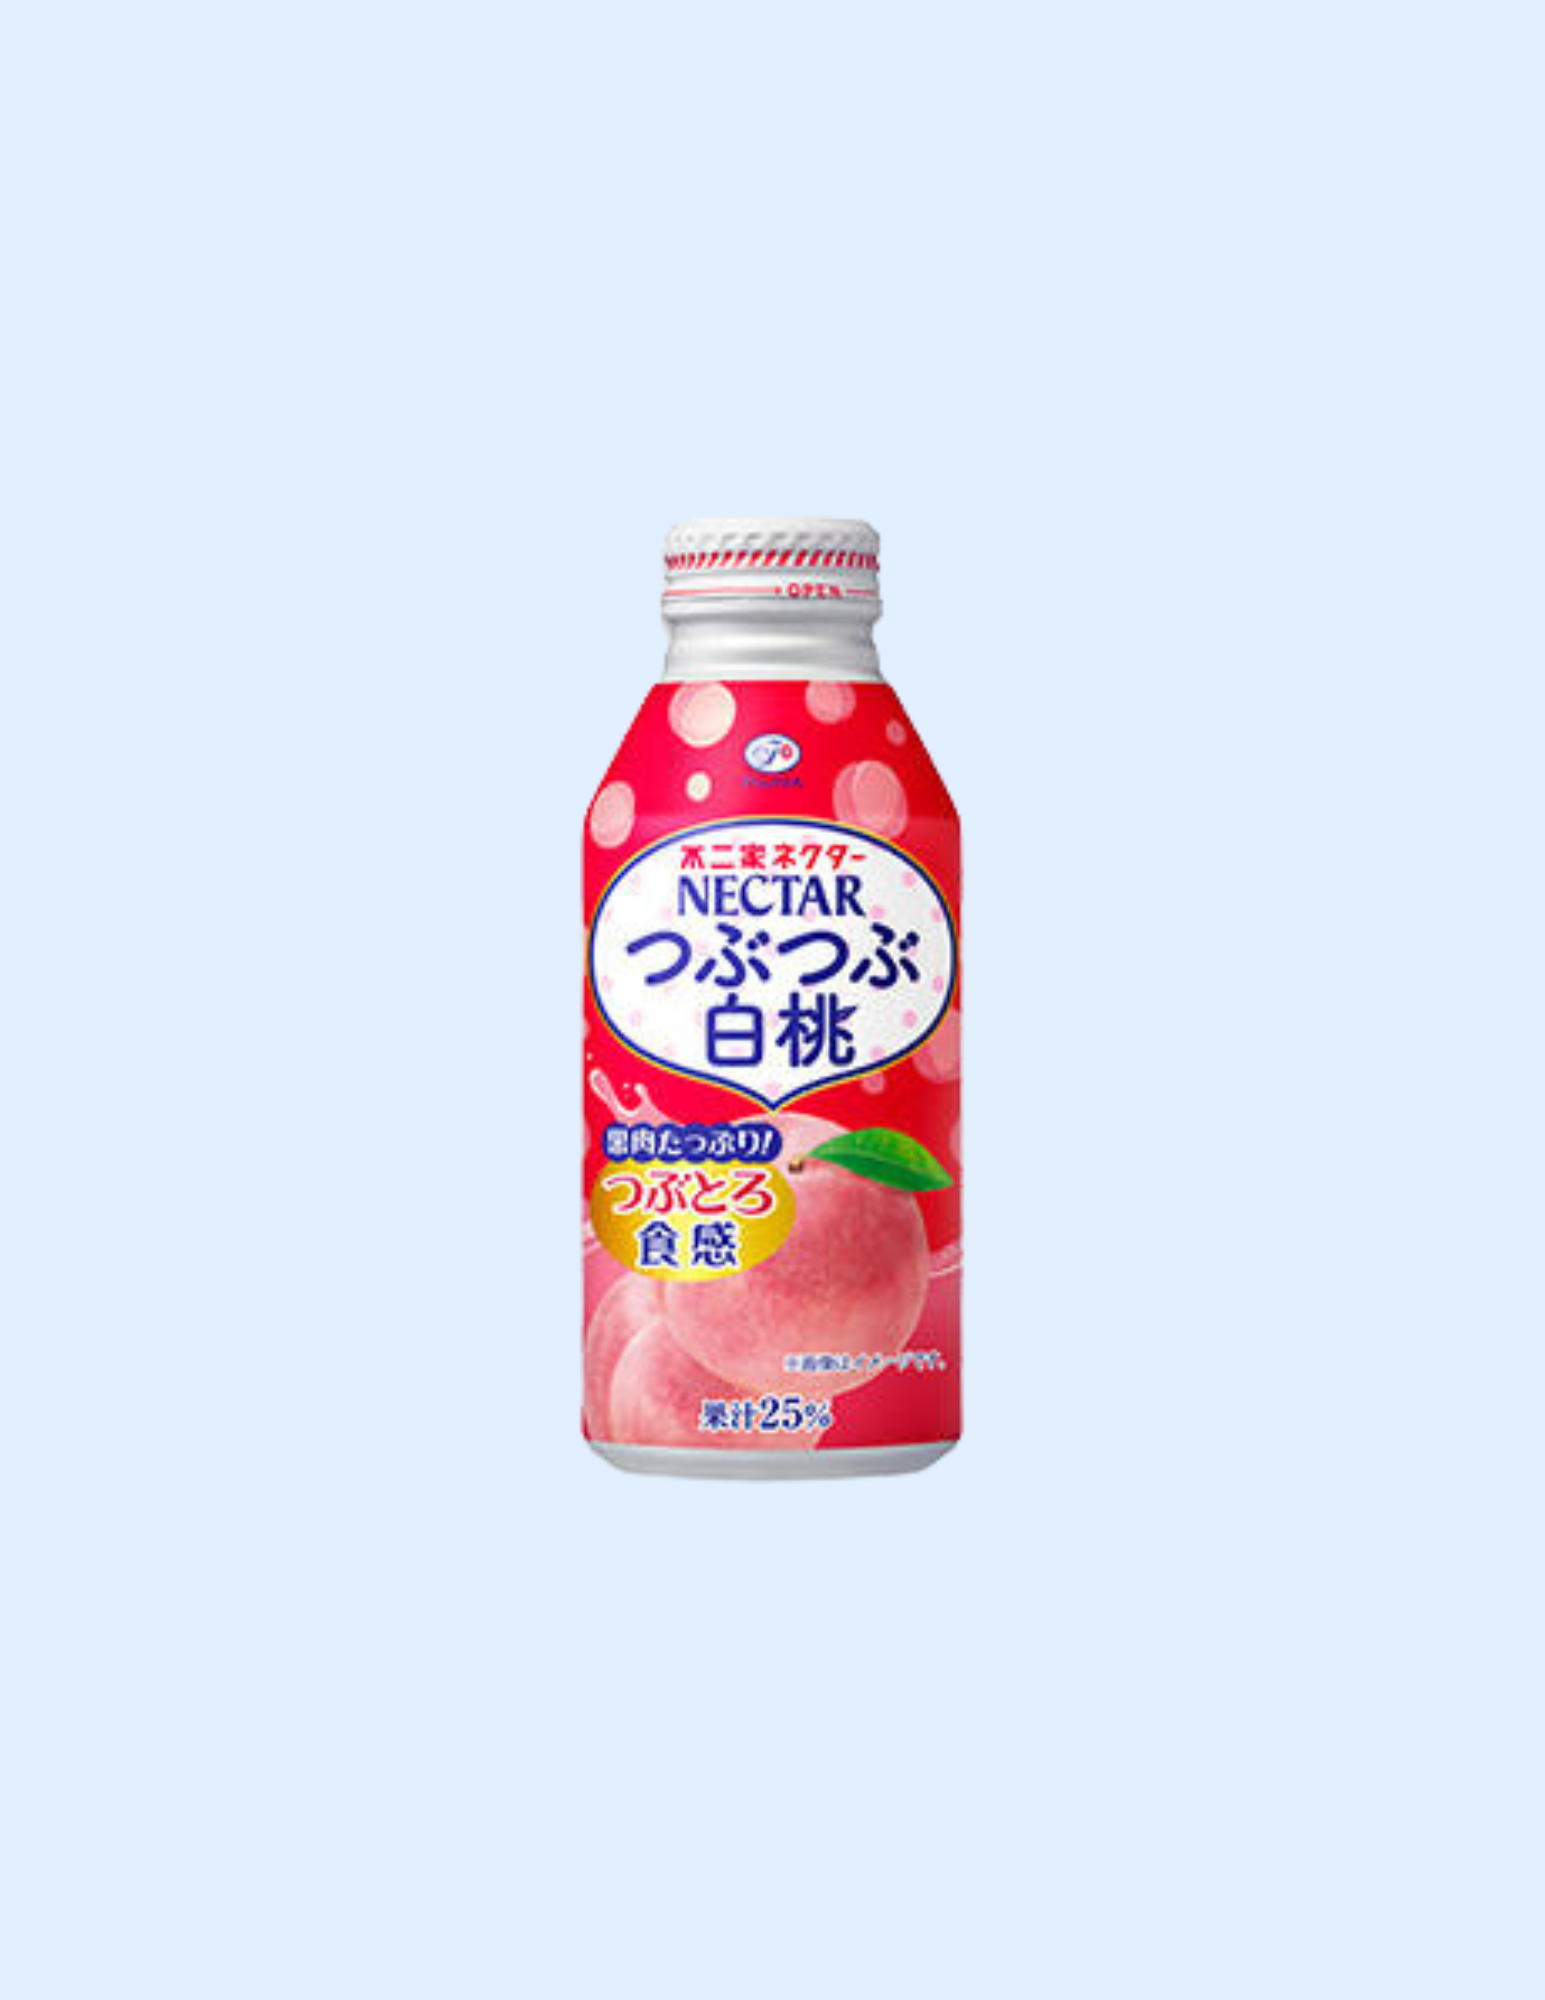 Fujiya Nectar Peach Drink Peach with Pulp